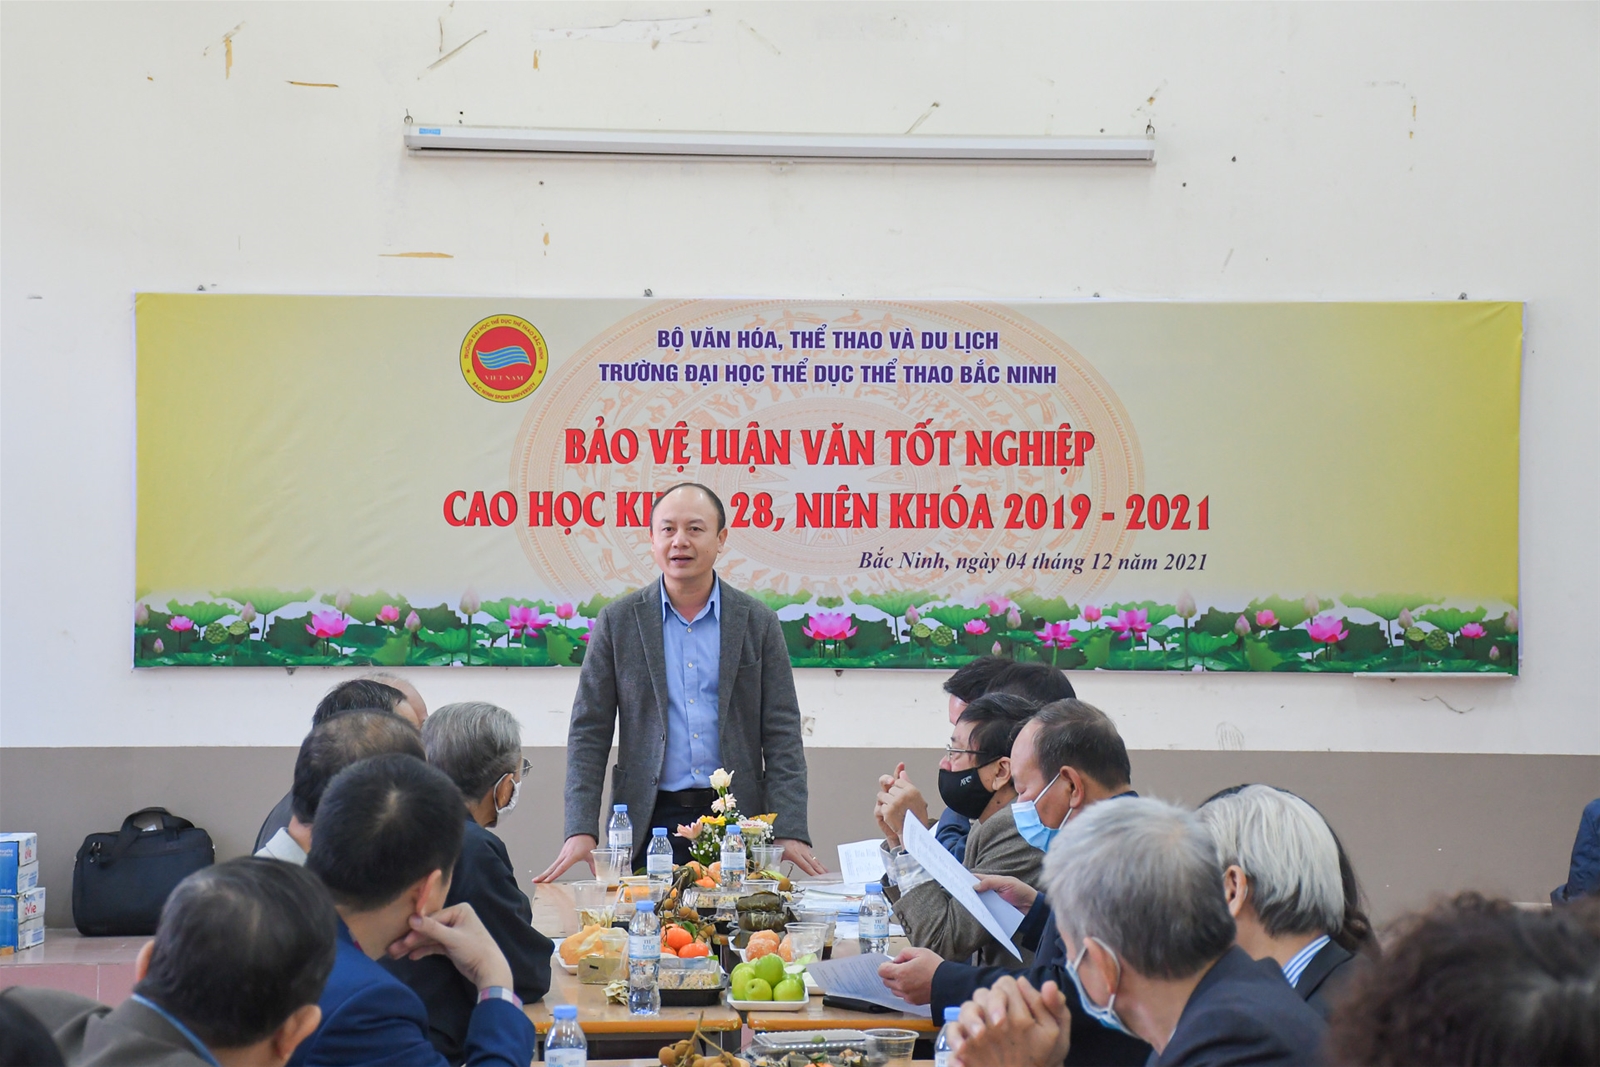 Trường Đại học Thể dục thể thao Bắc Ninh tổ chức đánh giá luận văn Cao học Khóa 28, niên khóa 2019-2021